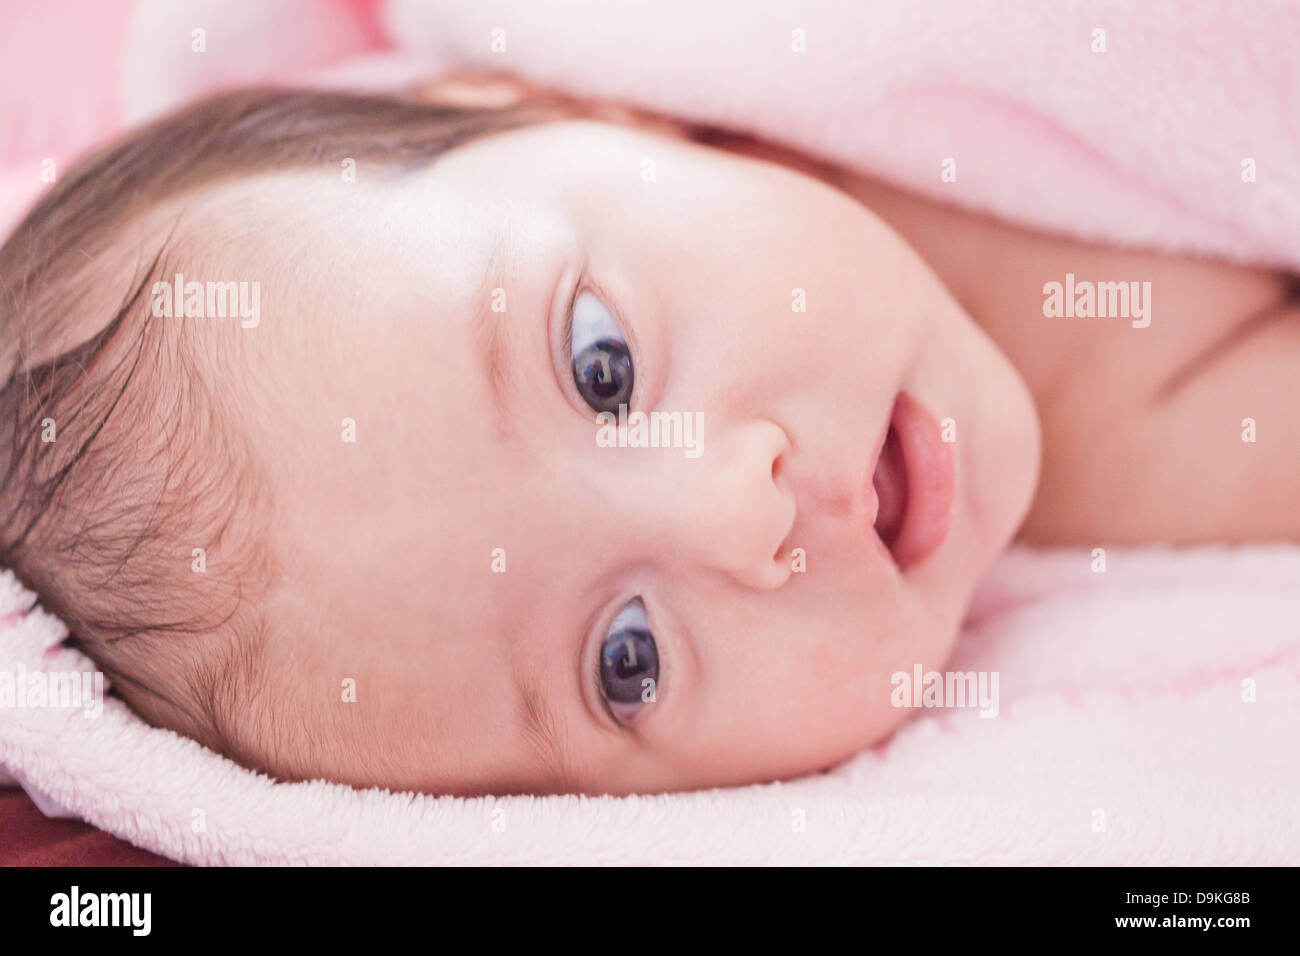 Retrato del recién nacido Foto de stock